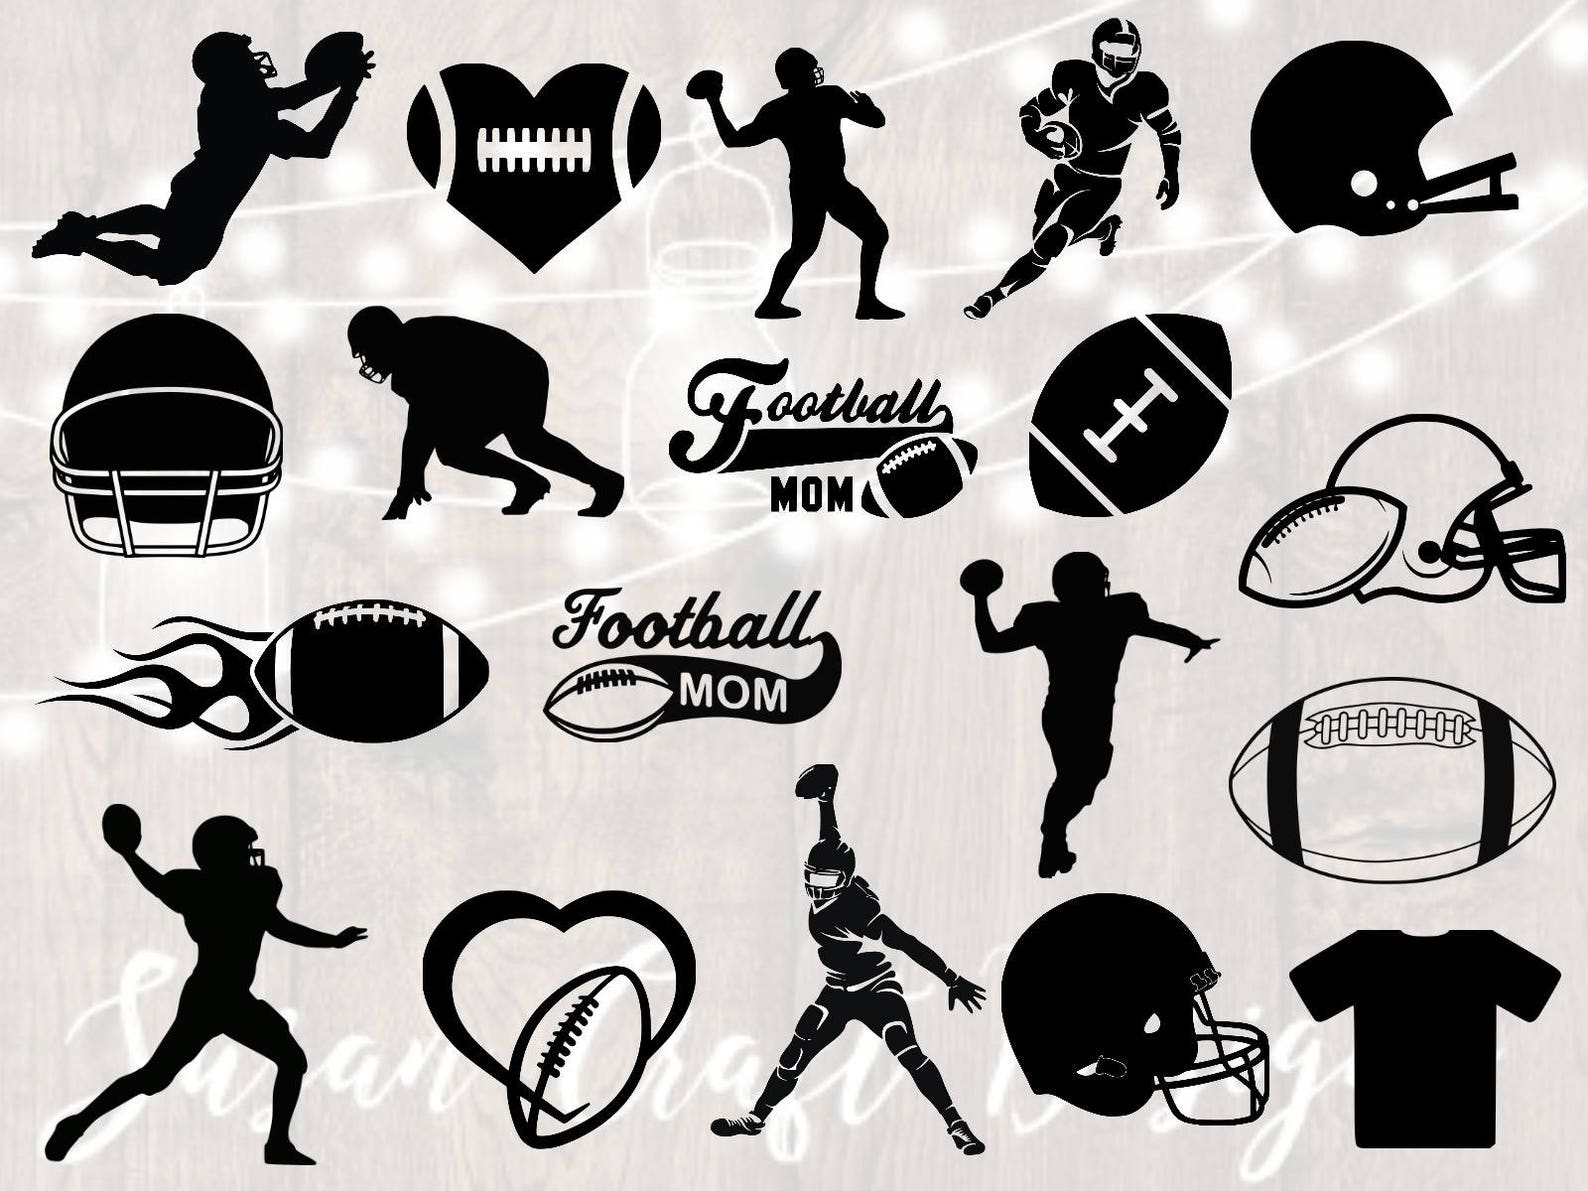 Diverse of football symbols.